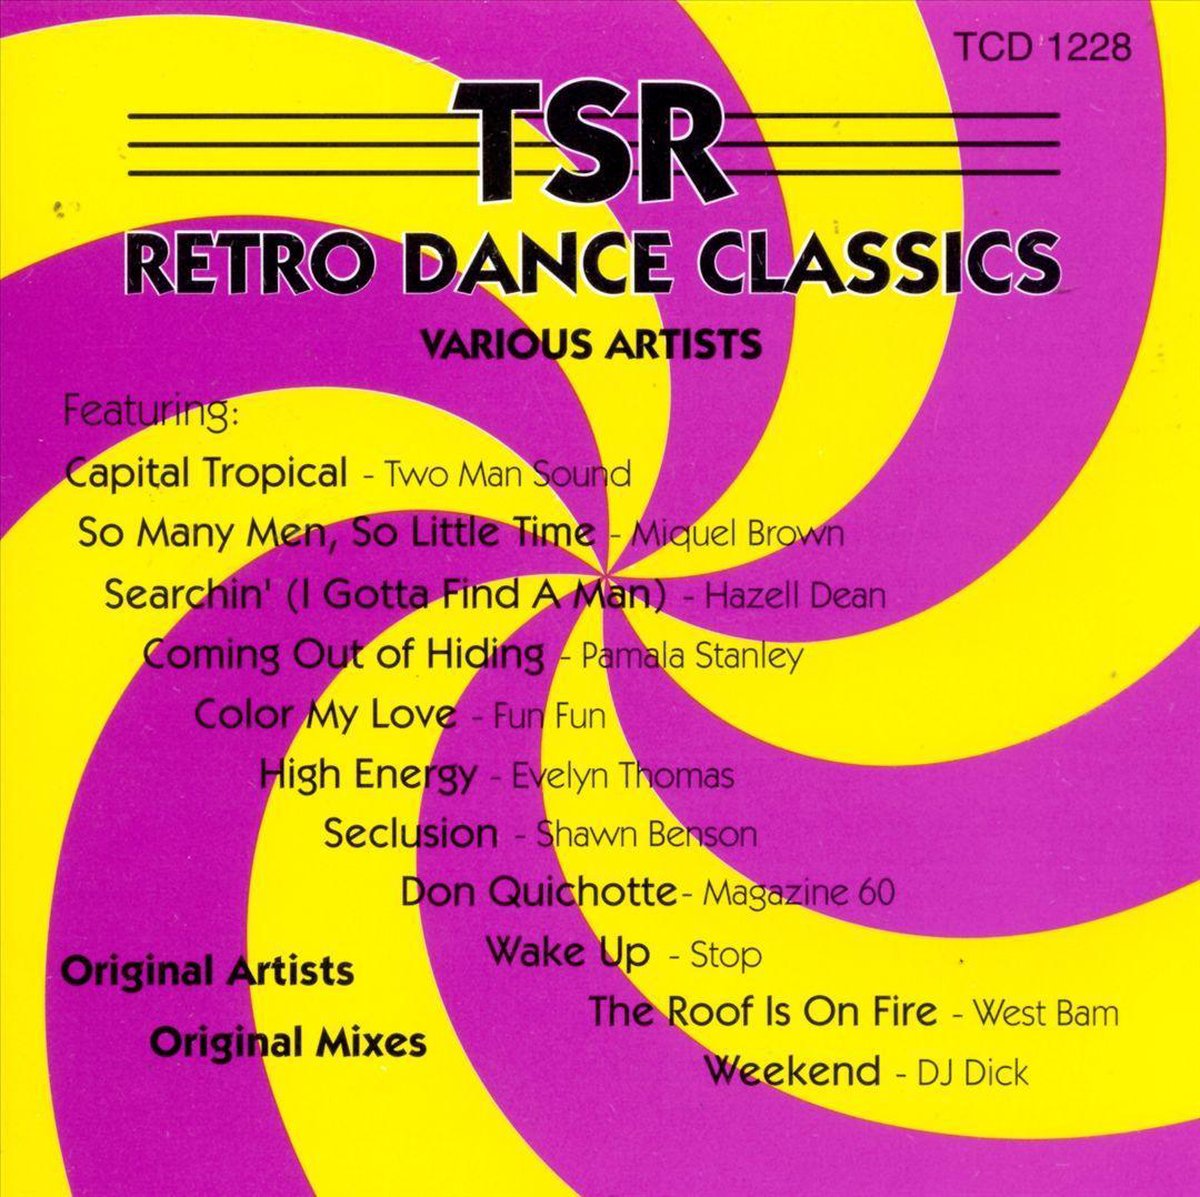 TSR Retro Dance Classics - various artists